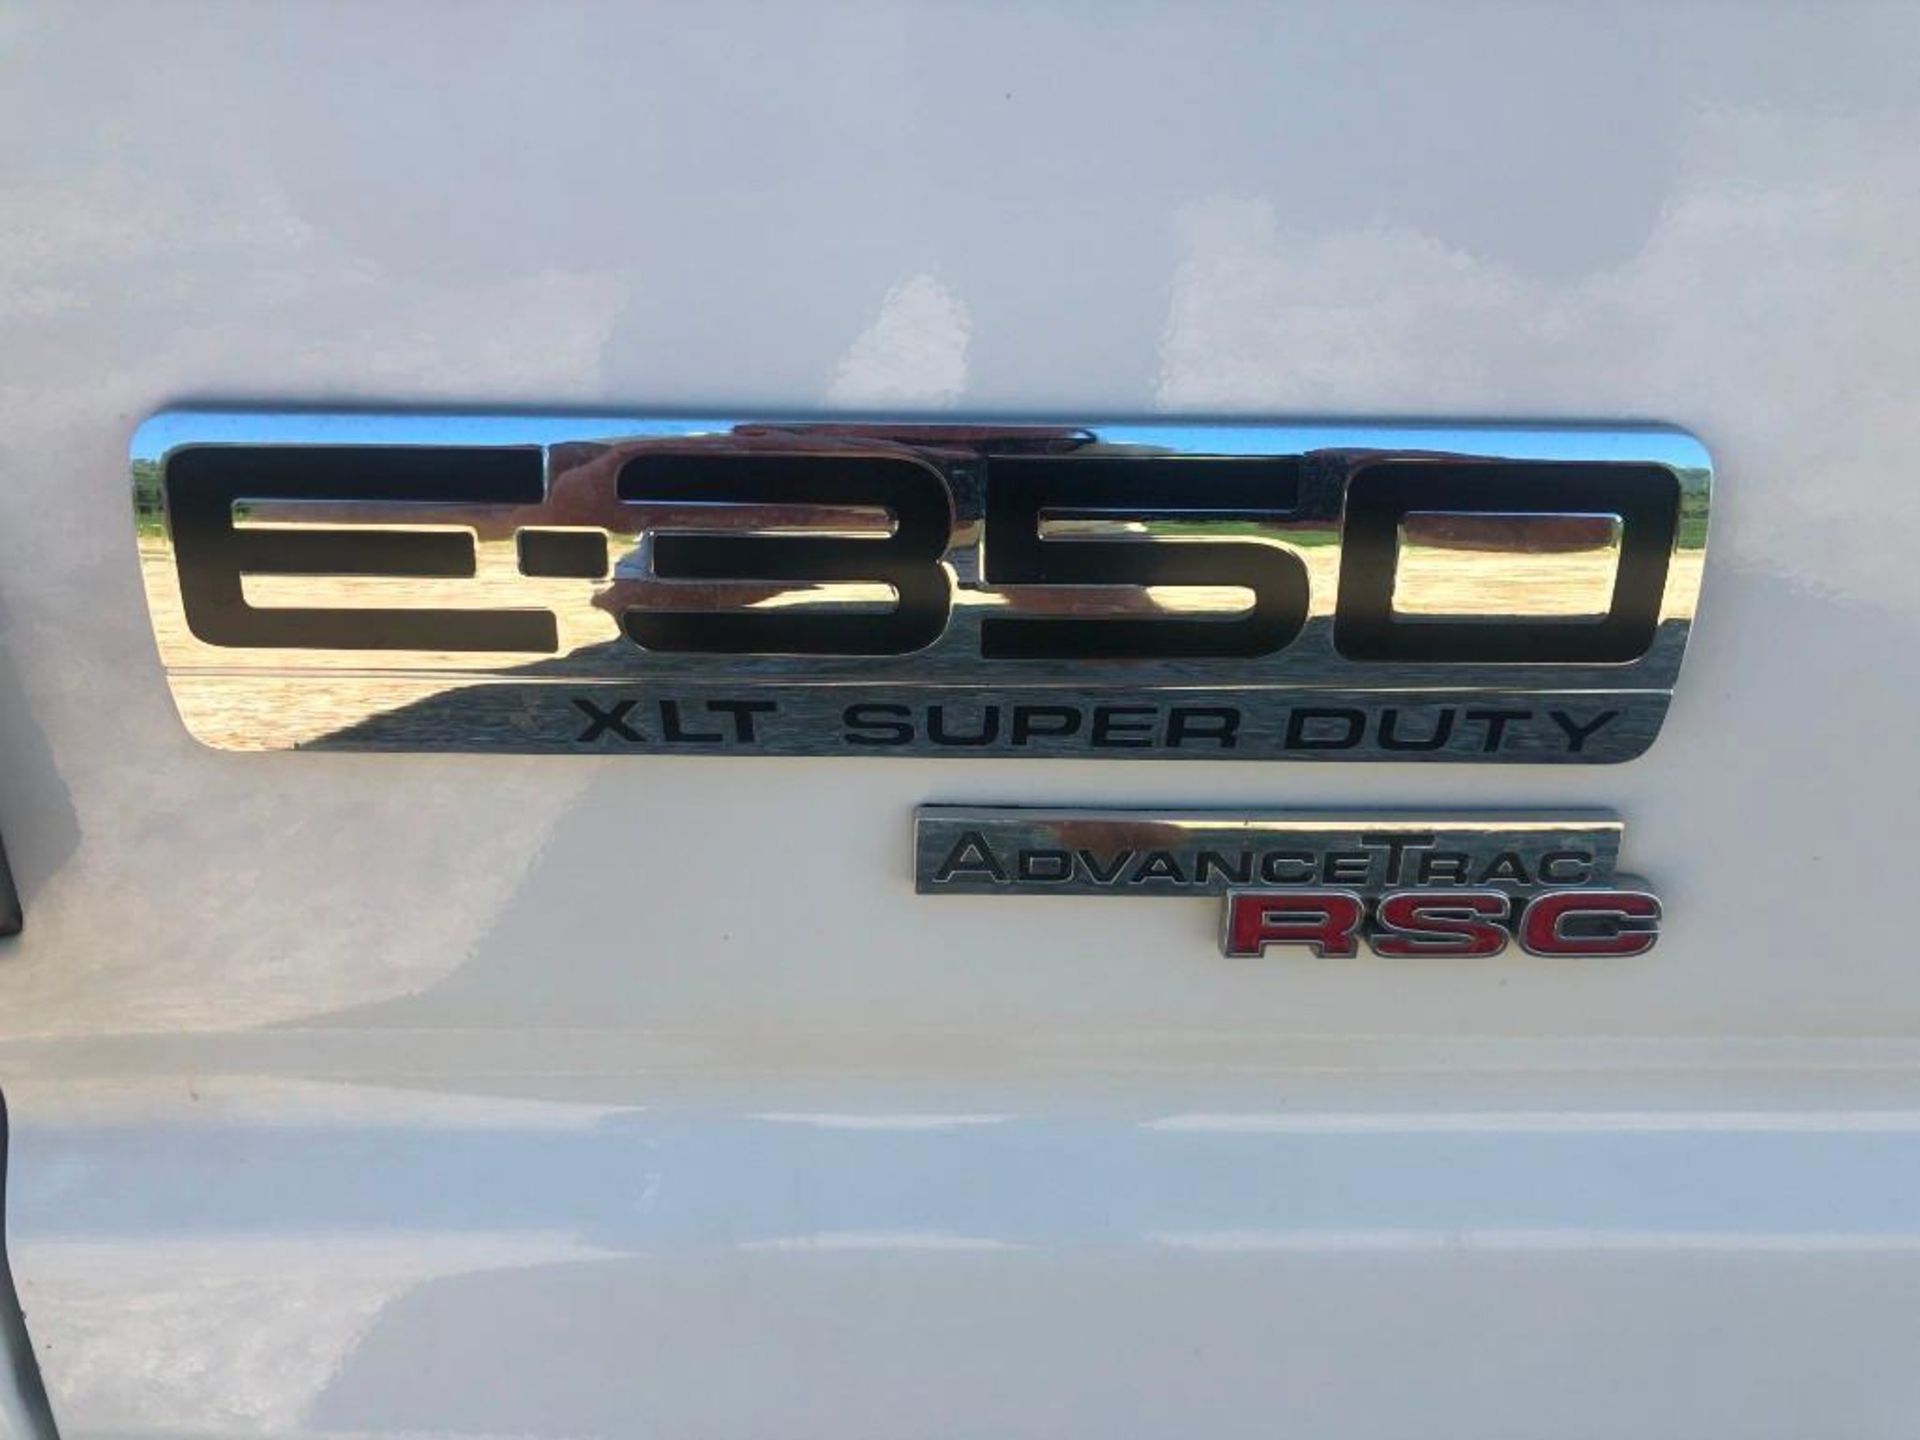 2014 Ford E3500 XLT Super Duty Van, VIN #1FBSS3BL2EDA76982, 182268 Miles, Model E3500XLT Super - Image 5 of 19